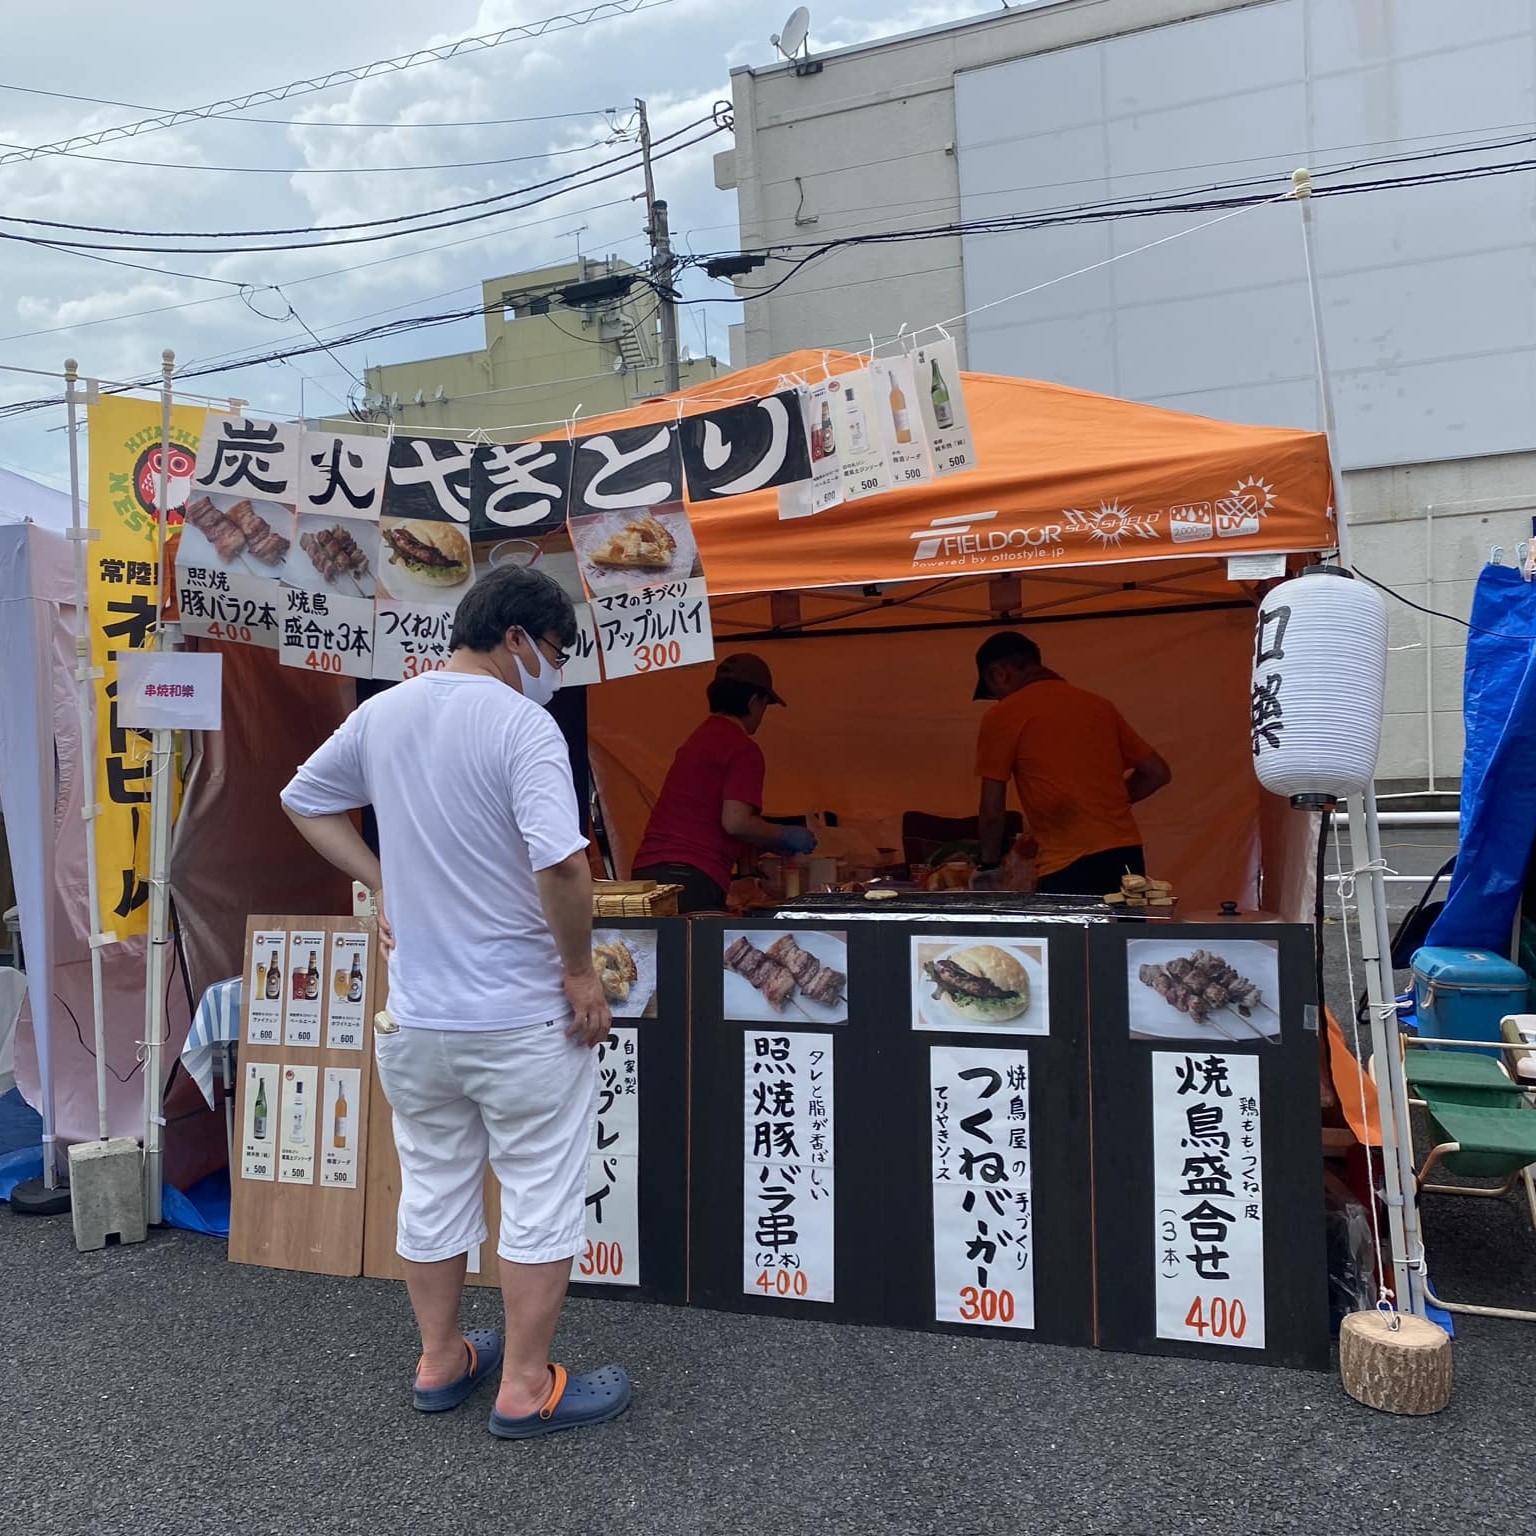 ひたちなか祭り 勝田TAMARIBA横丁 串焼和樂